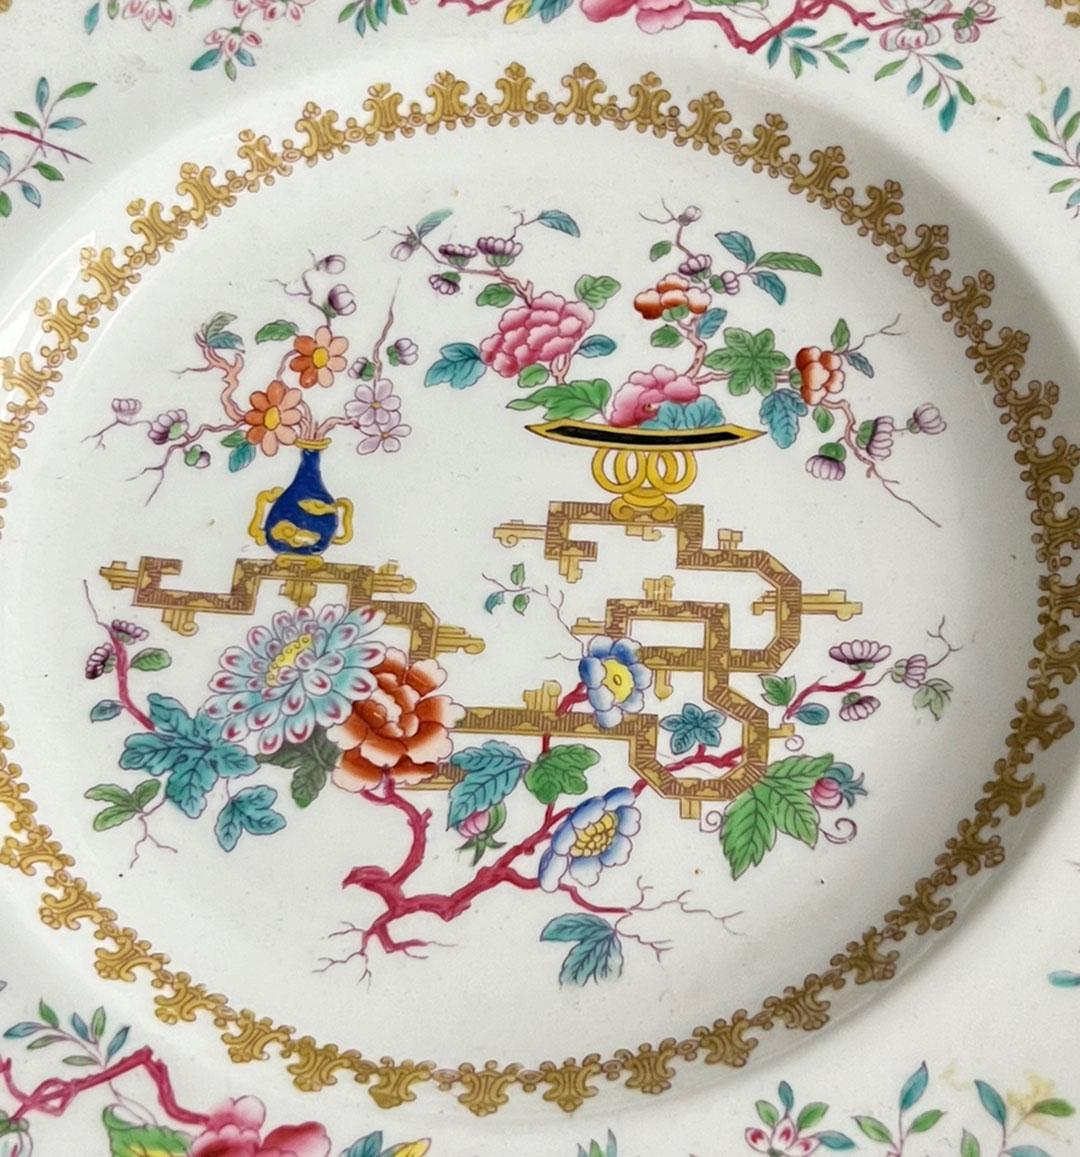 Assiette ancienne à bord festonné en forme d'arbre chinois de Minton. Signé au dos, numéro de modèle 1959. Arbre chinois avec des vases de pivoines et de fleurs peints à la main. Vers les années 1840.